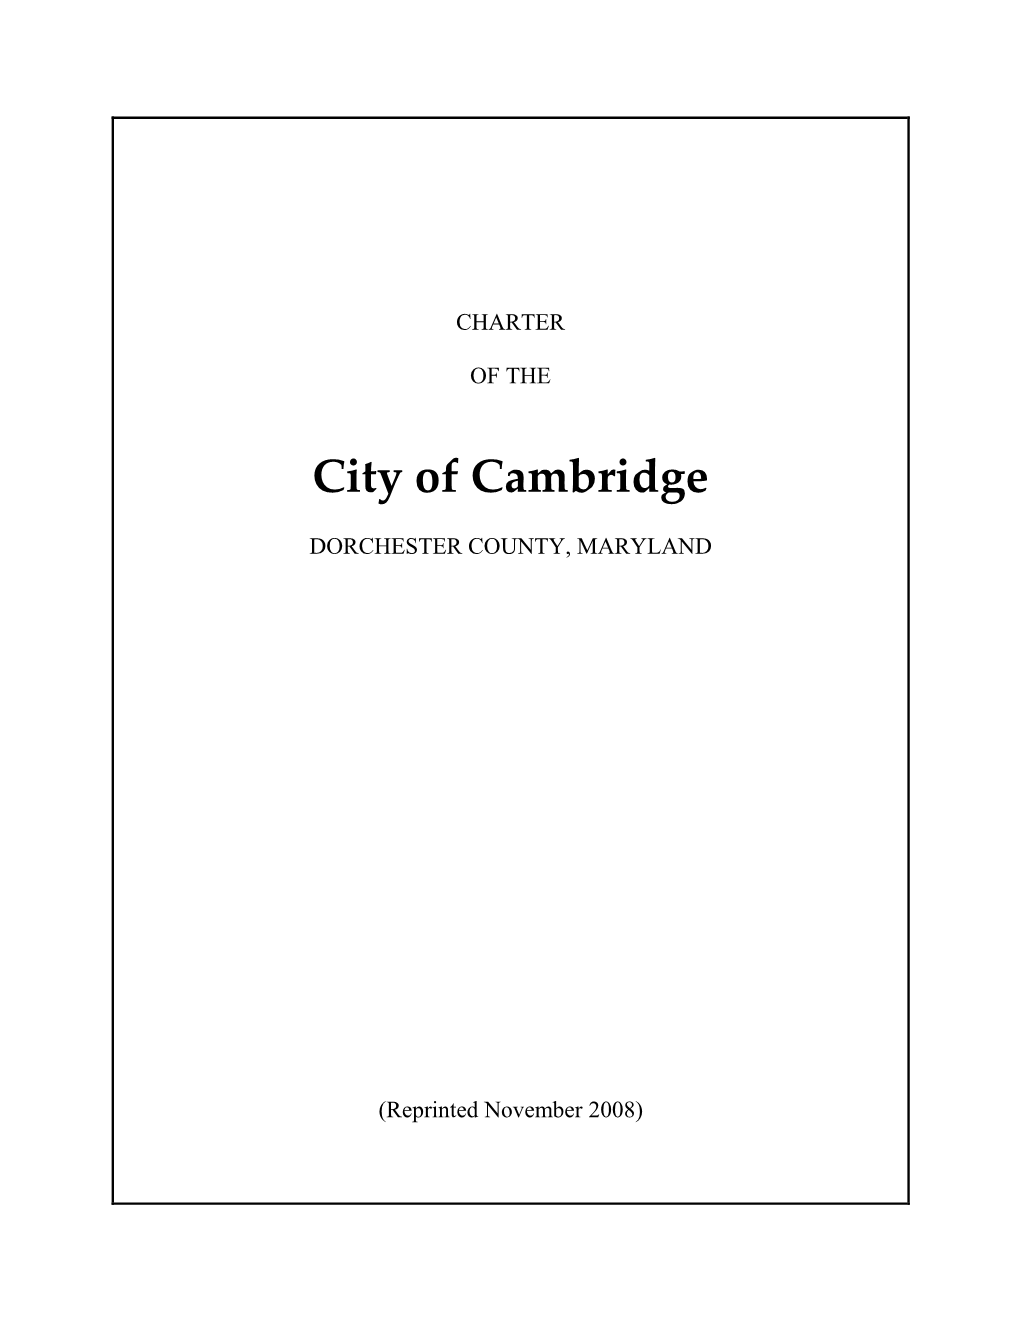 Charter of the City of Cambridge 19 - Iii